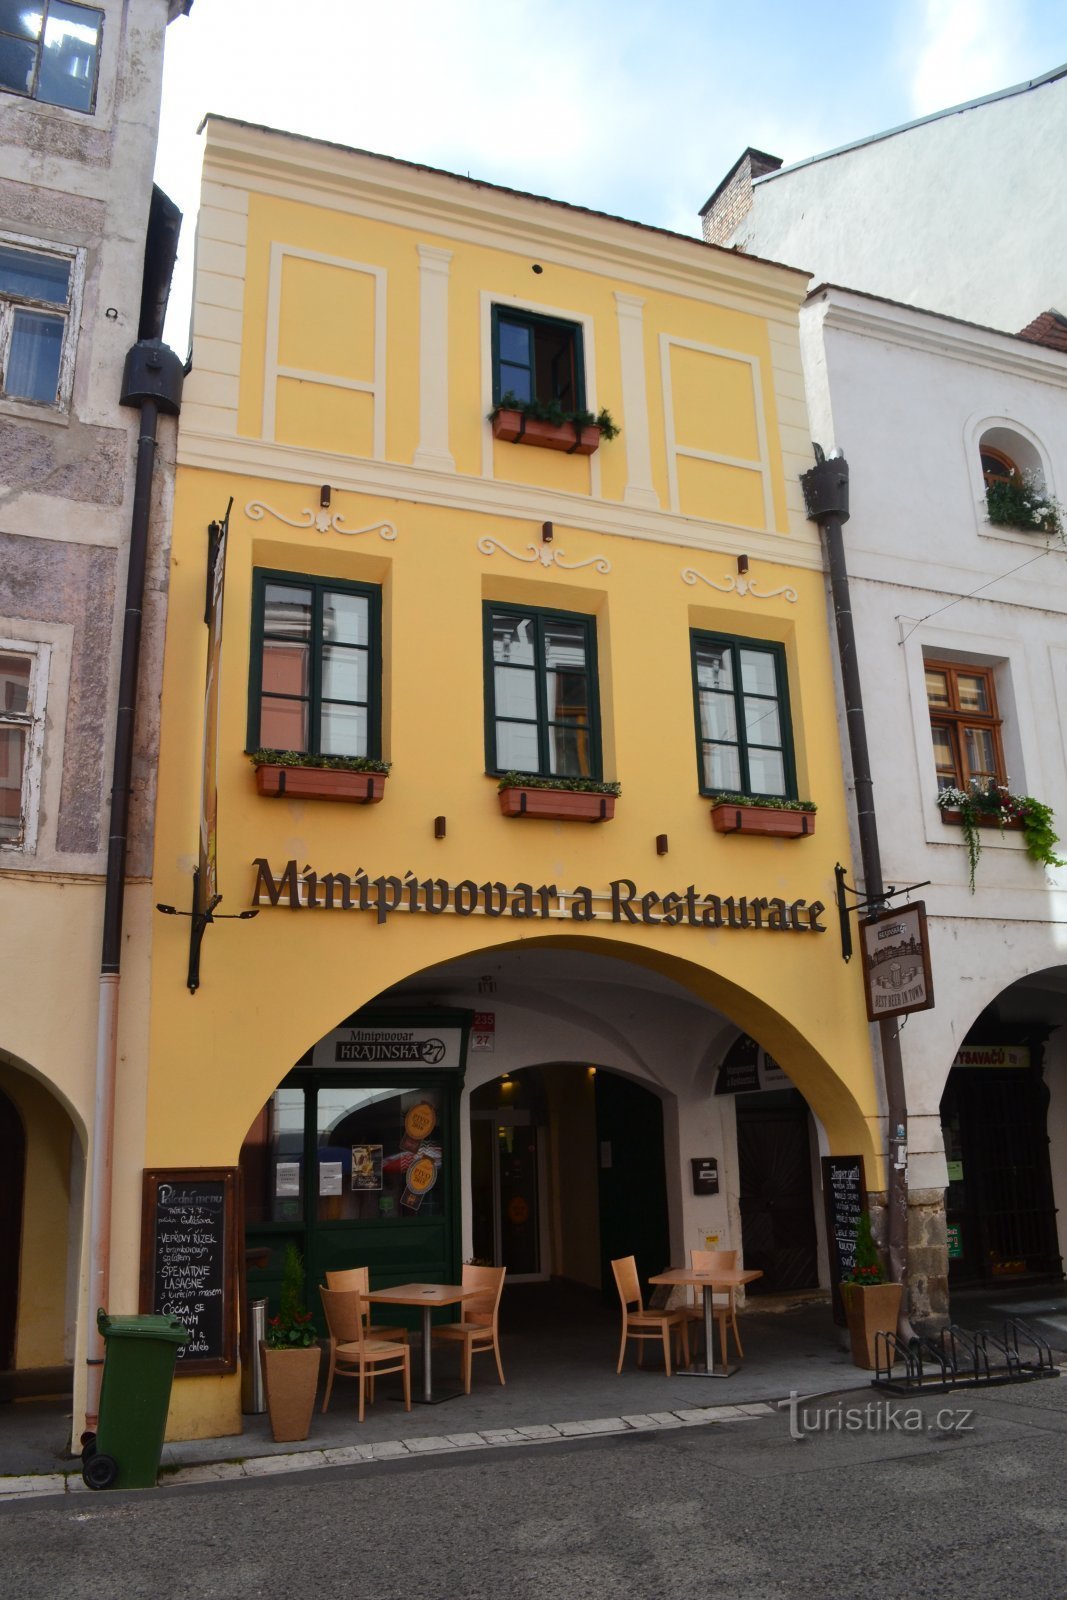 Minibryggeri och restaurang